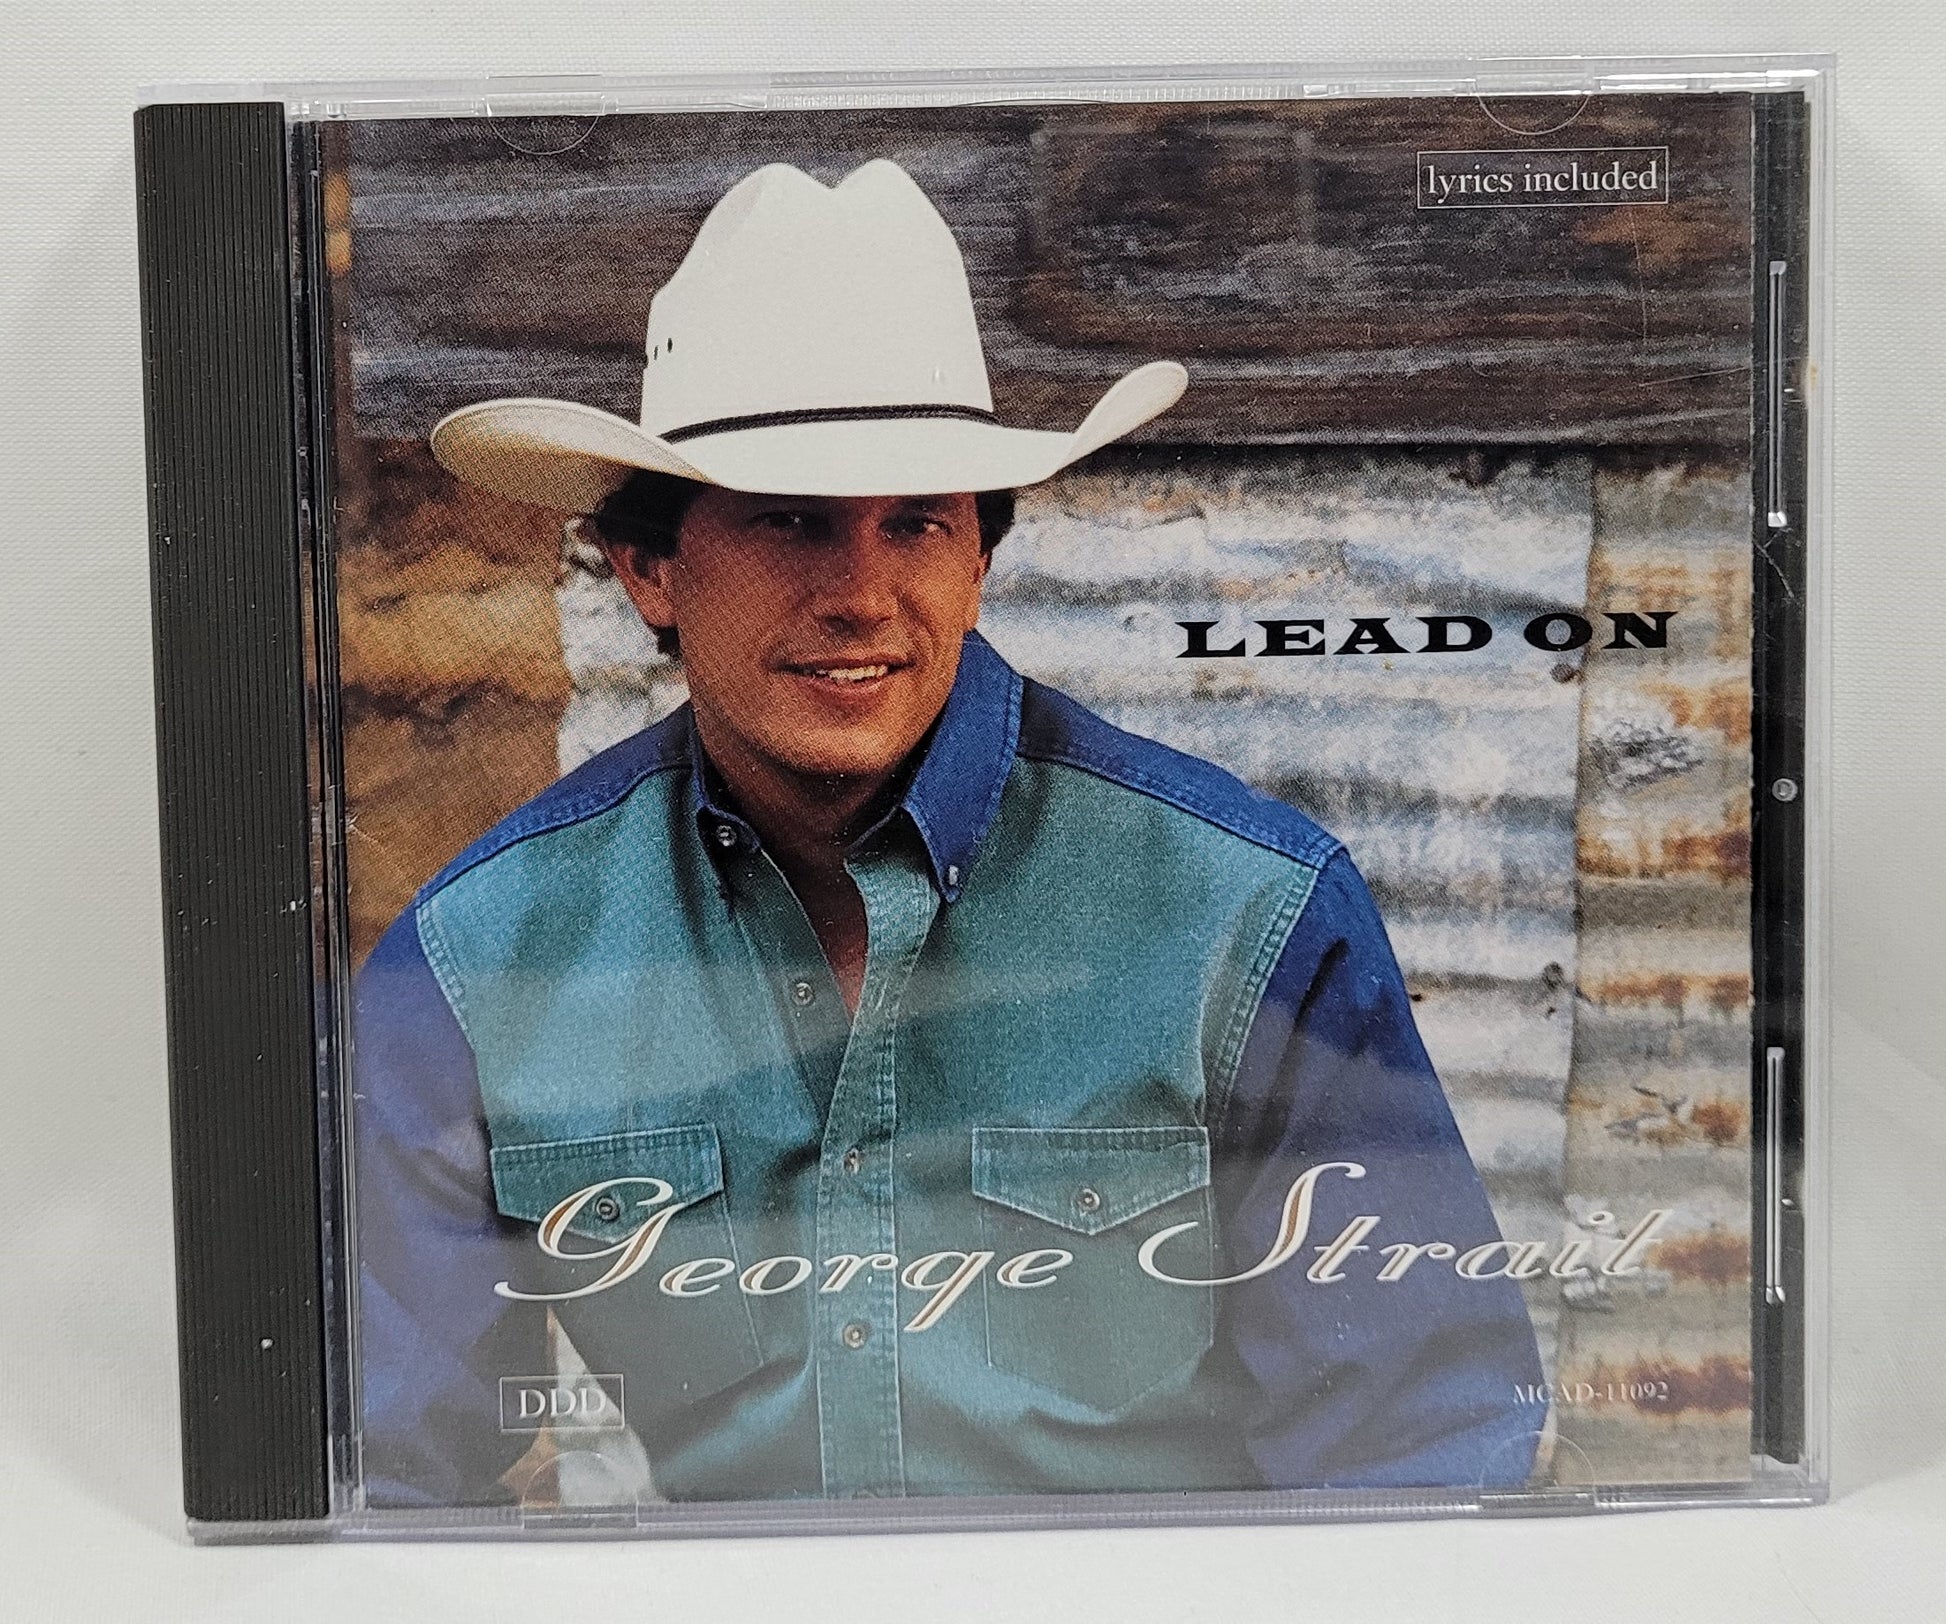 George Strait - Lead On [1994 Club Edition] [Used CD]